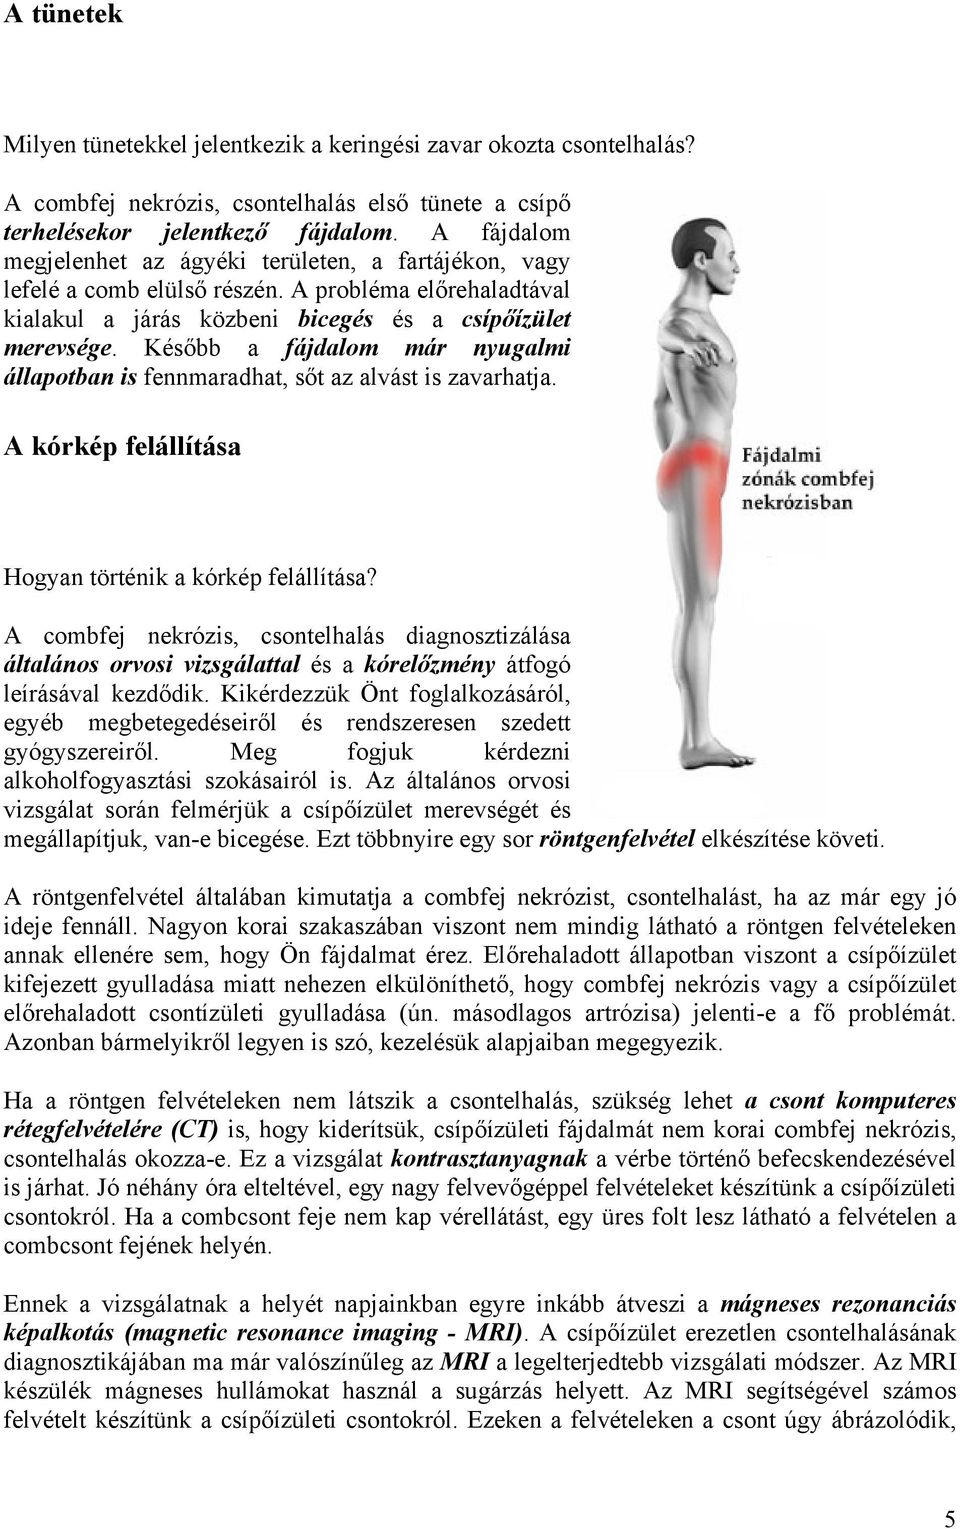 A csípő-keresztcsonti ízület gyulladása (sacroileitis)